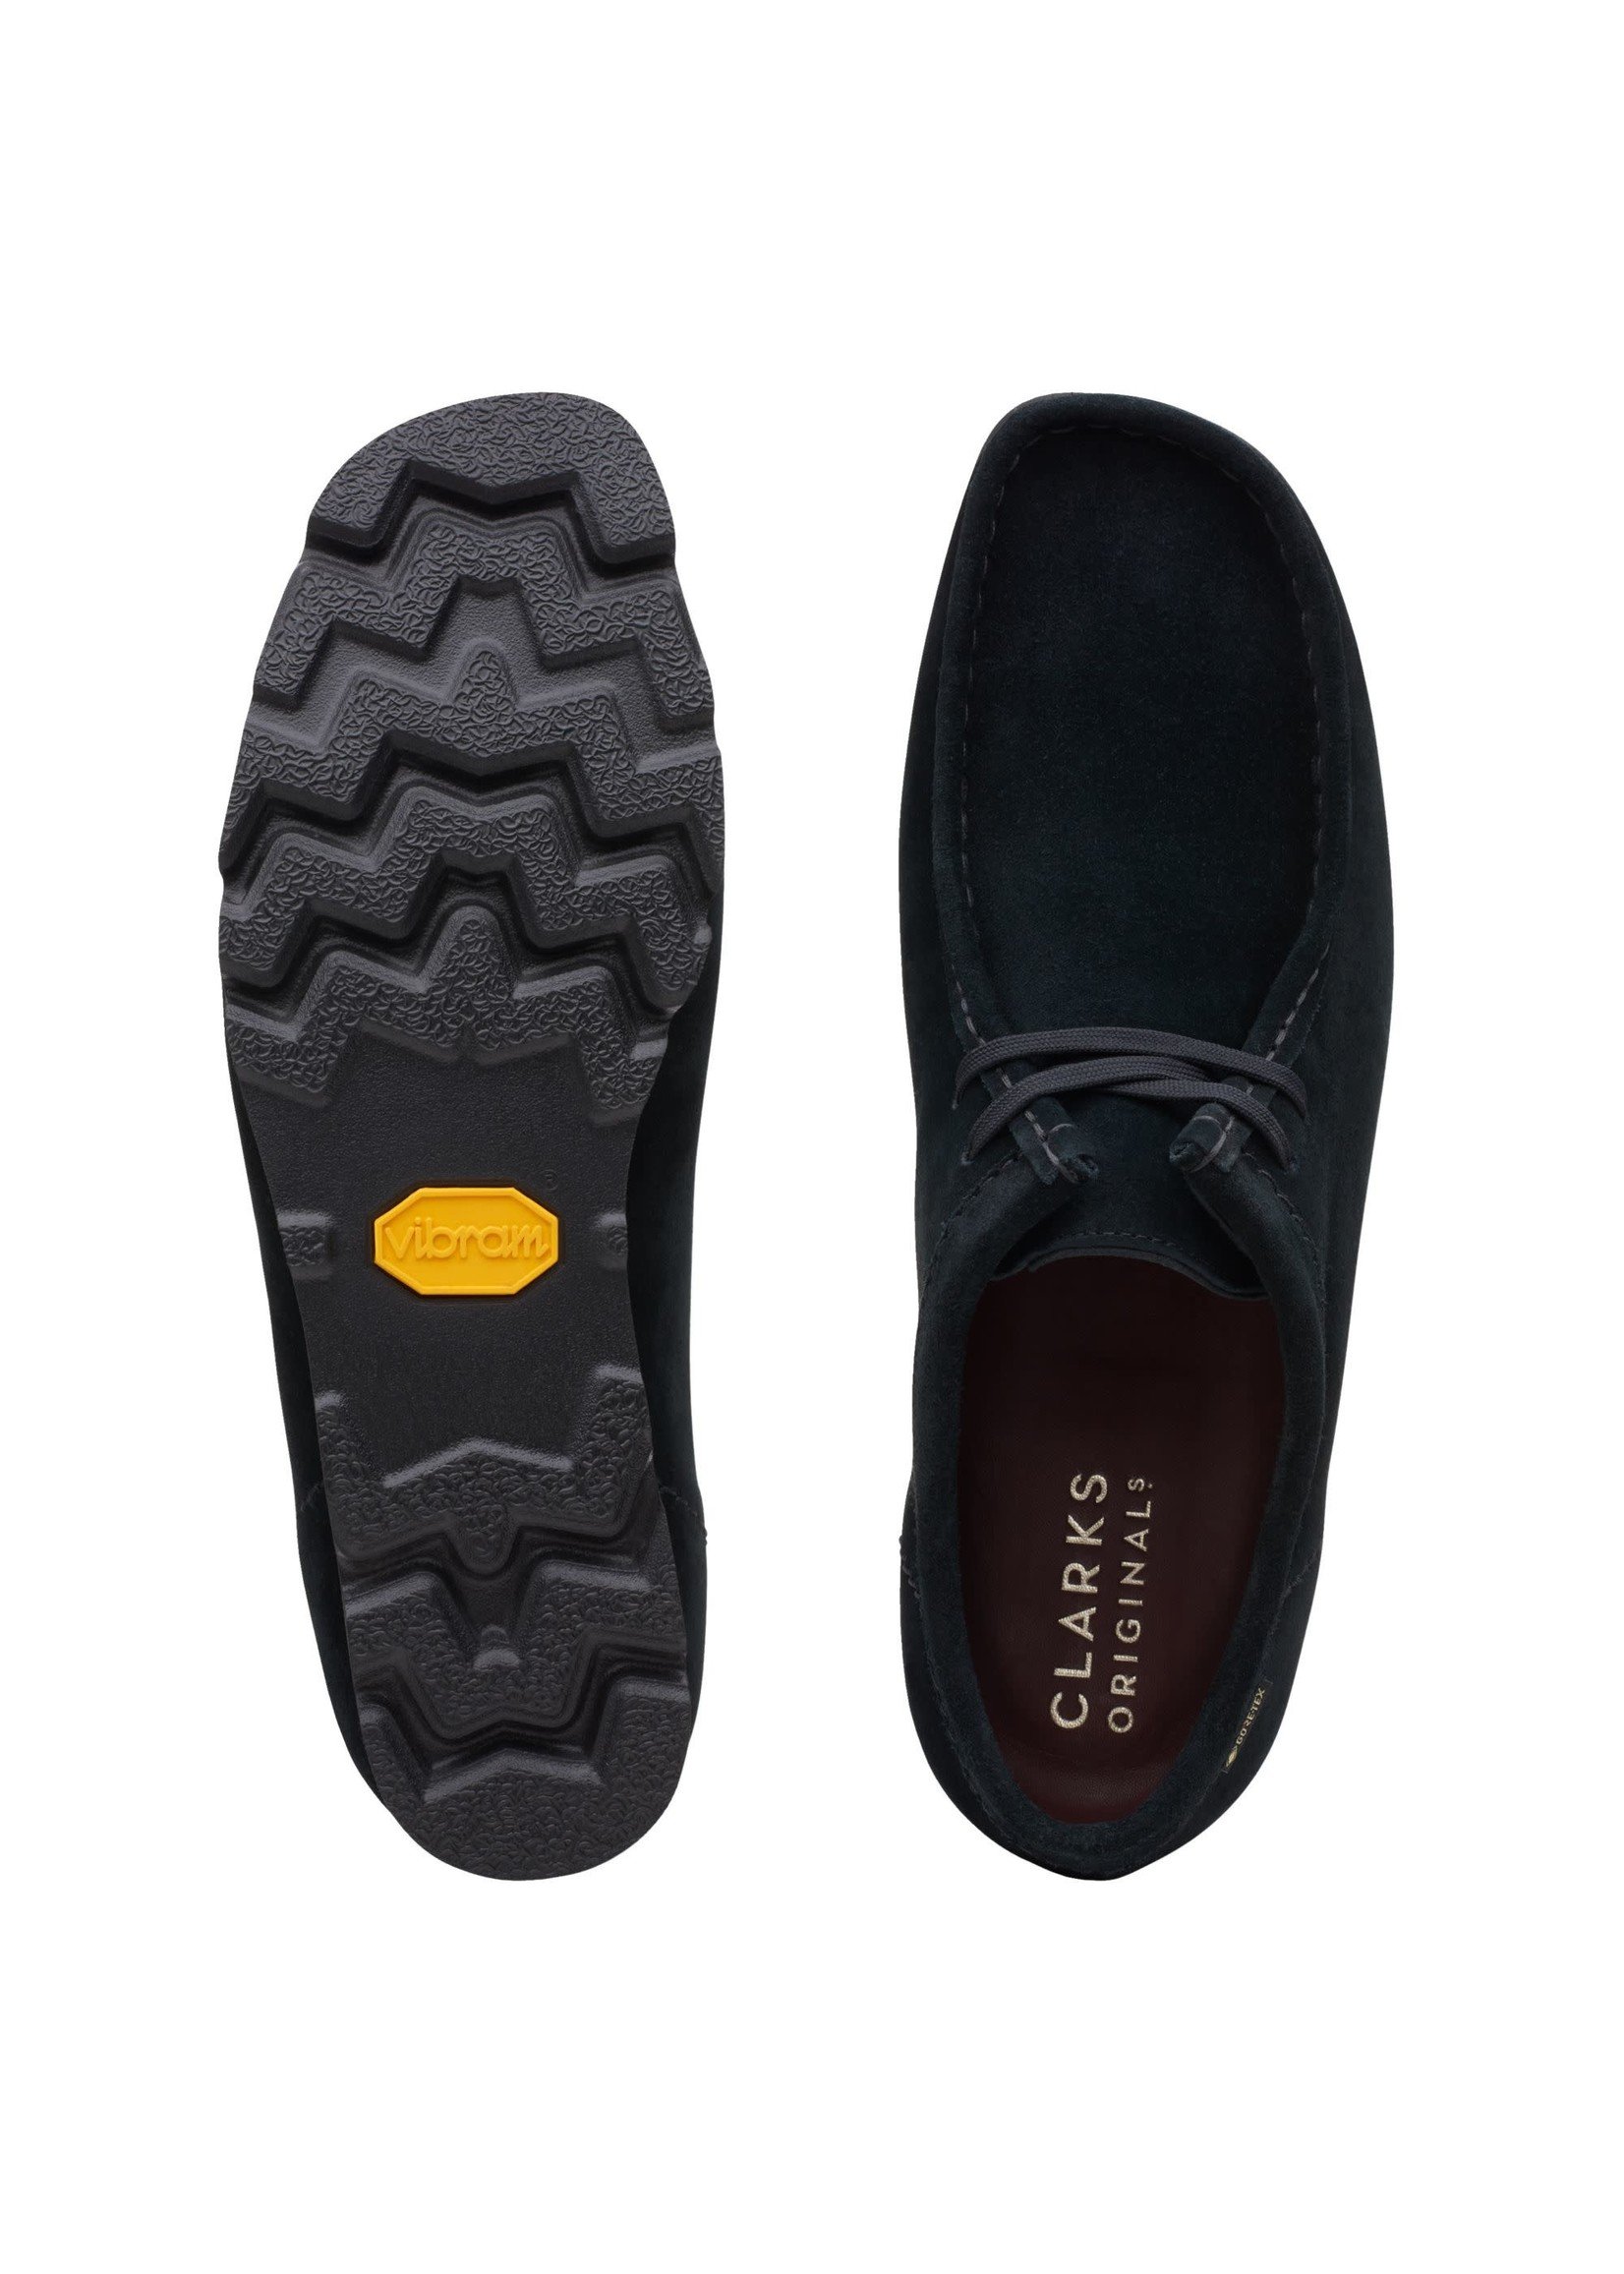 Men's Wallabee GTX Shoes, Black Suede - SHOE PLUS - Low Prices